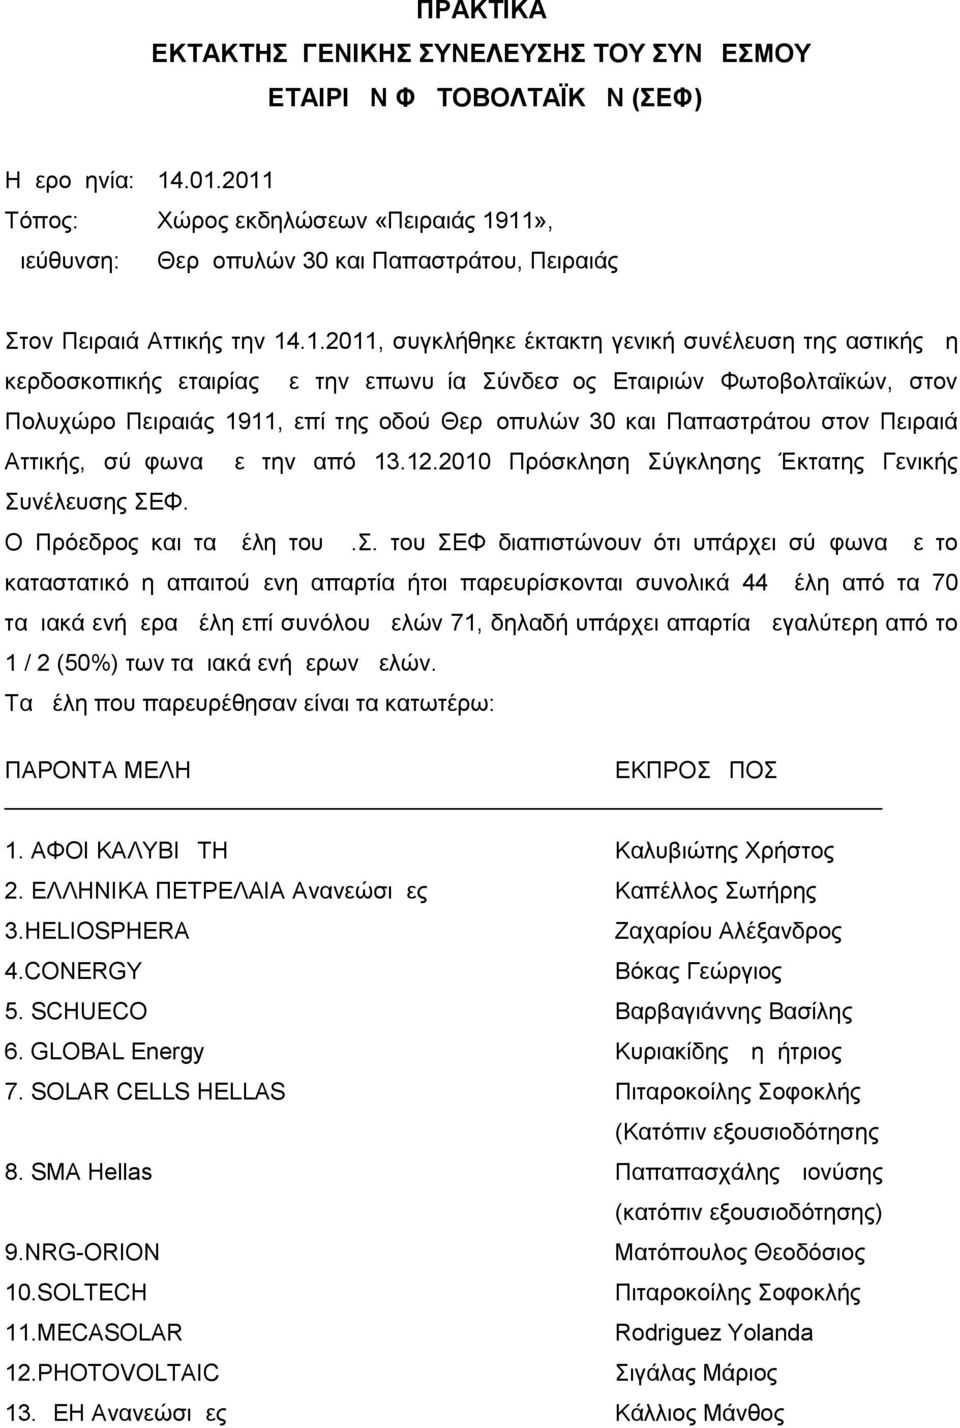 εταιρίας με την επωνυμία Σύνδεσμος Εταιριών Φωτοβολταϊκών, στον Πολυχώρο Πειραιάς 1911, επί της οδού Θερμοπυλών 30 και Παπαστράτου στον Πειραιά Αττικής, σύμφωνα με την από 13.12.